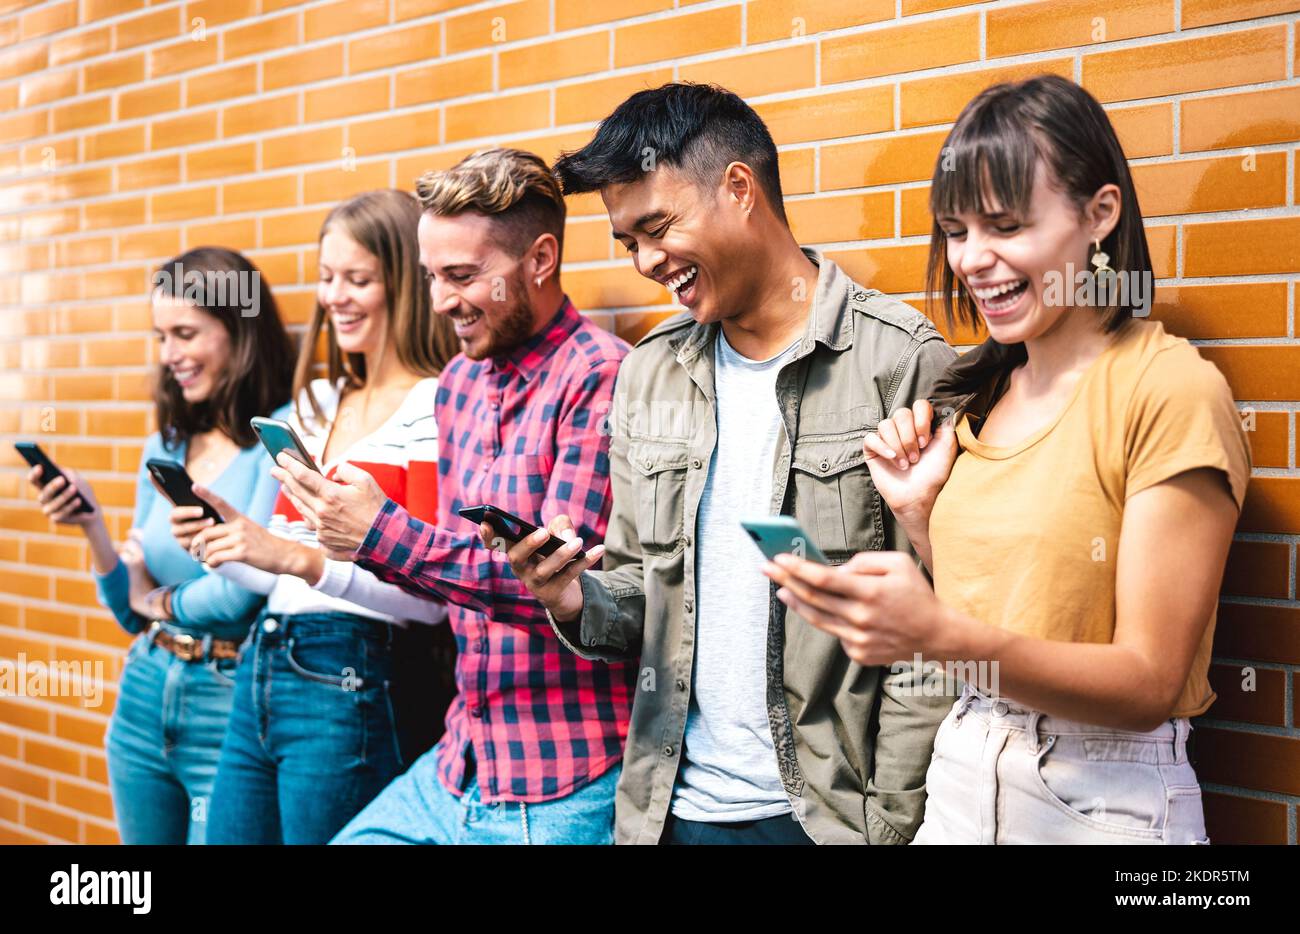 Multikulturelle Freunde nutzen Smartphones bei Hochschulferien - Milenial-Studenten süchtig nach Handy - Tech-Lifestyle-Konzept mit Stockfoto